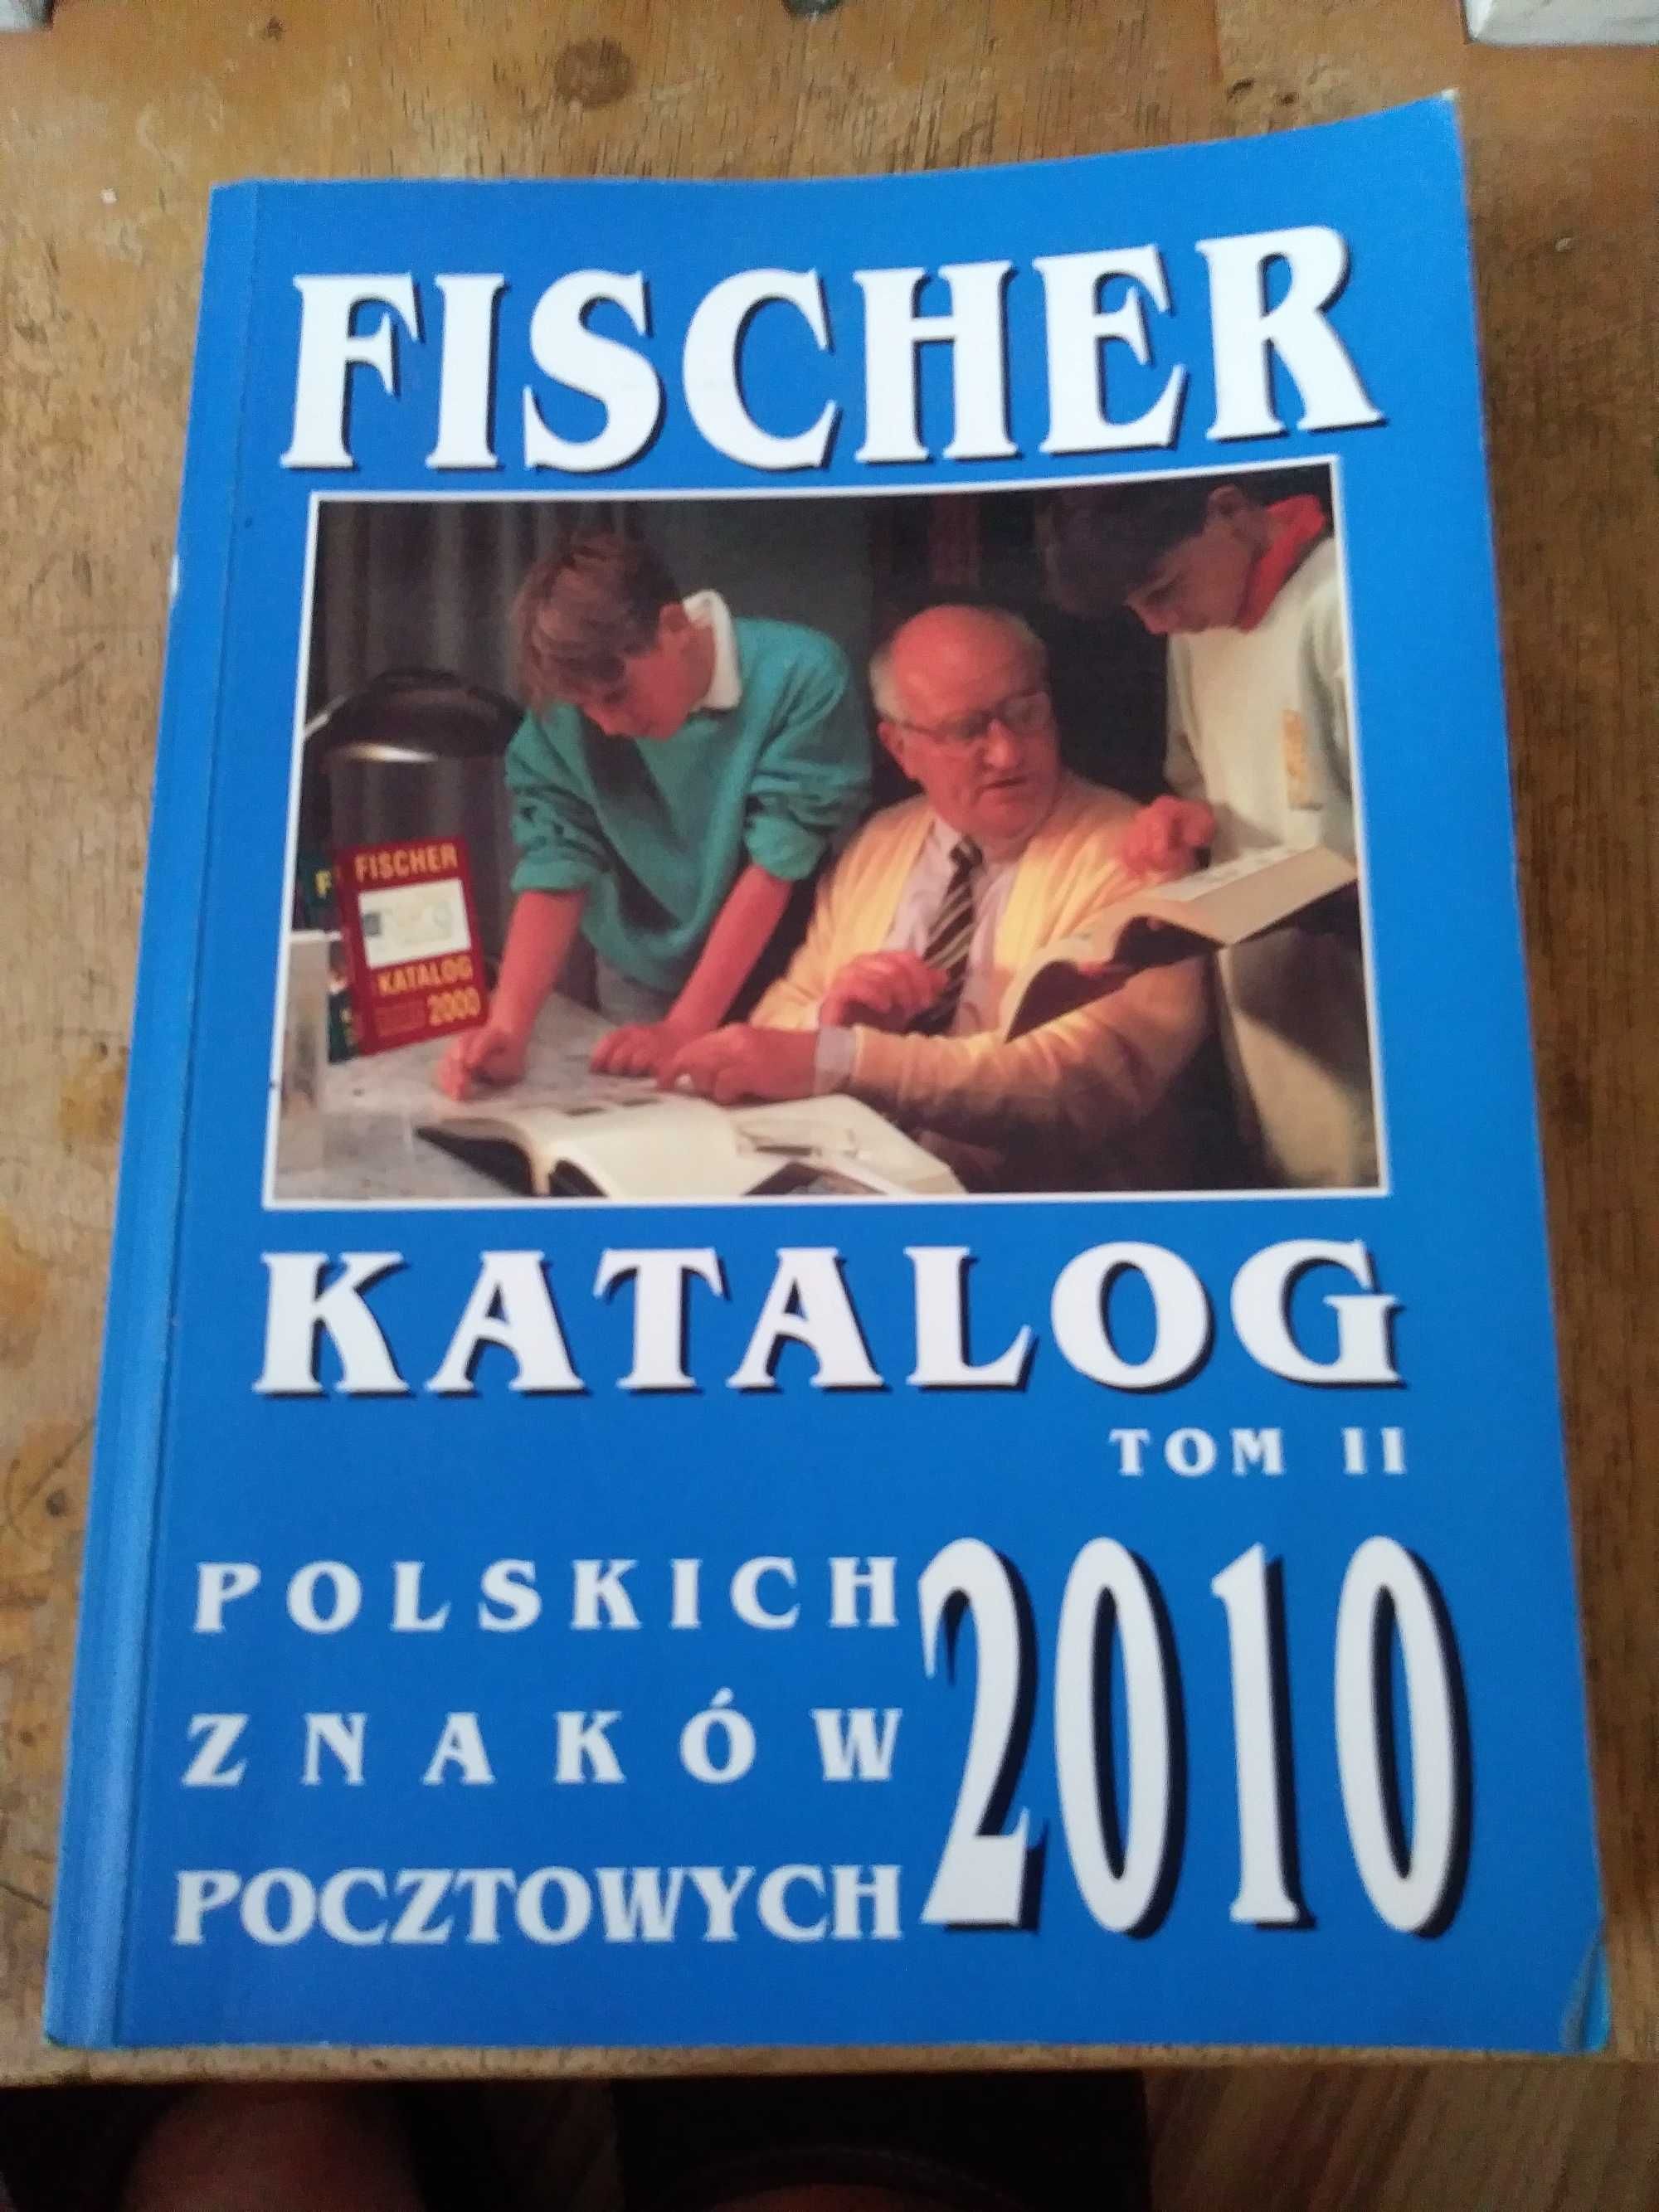 fisher-katalog polskich znakow poctowych